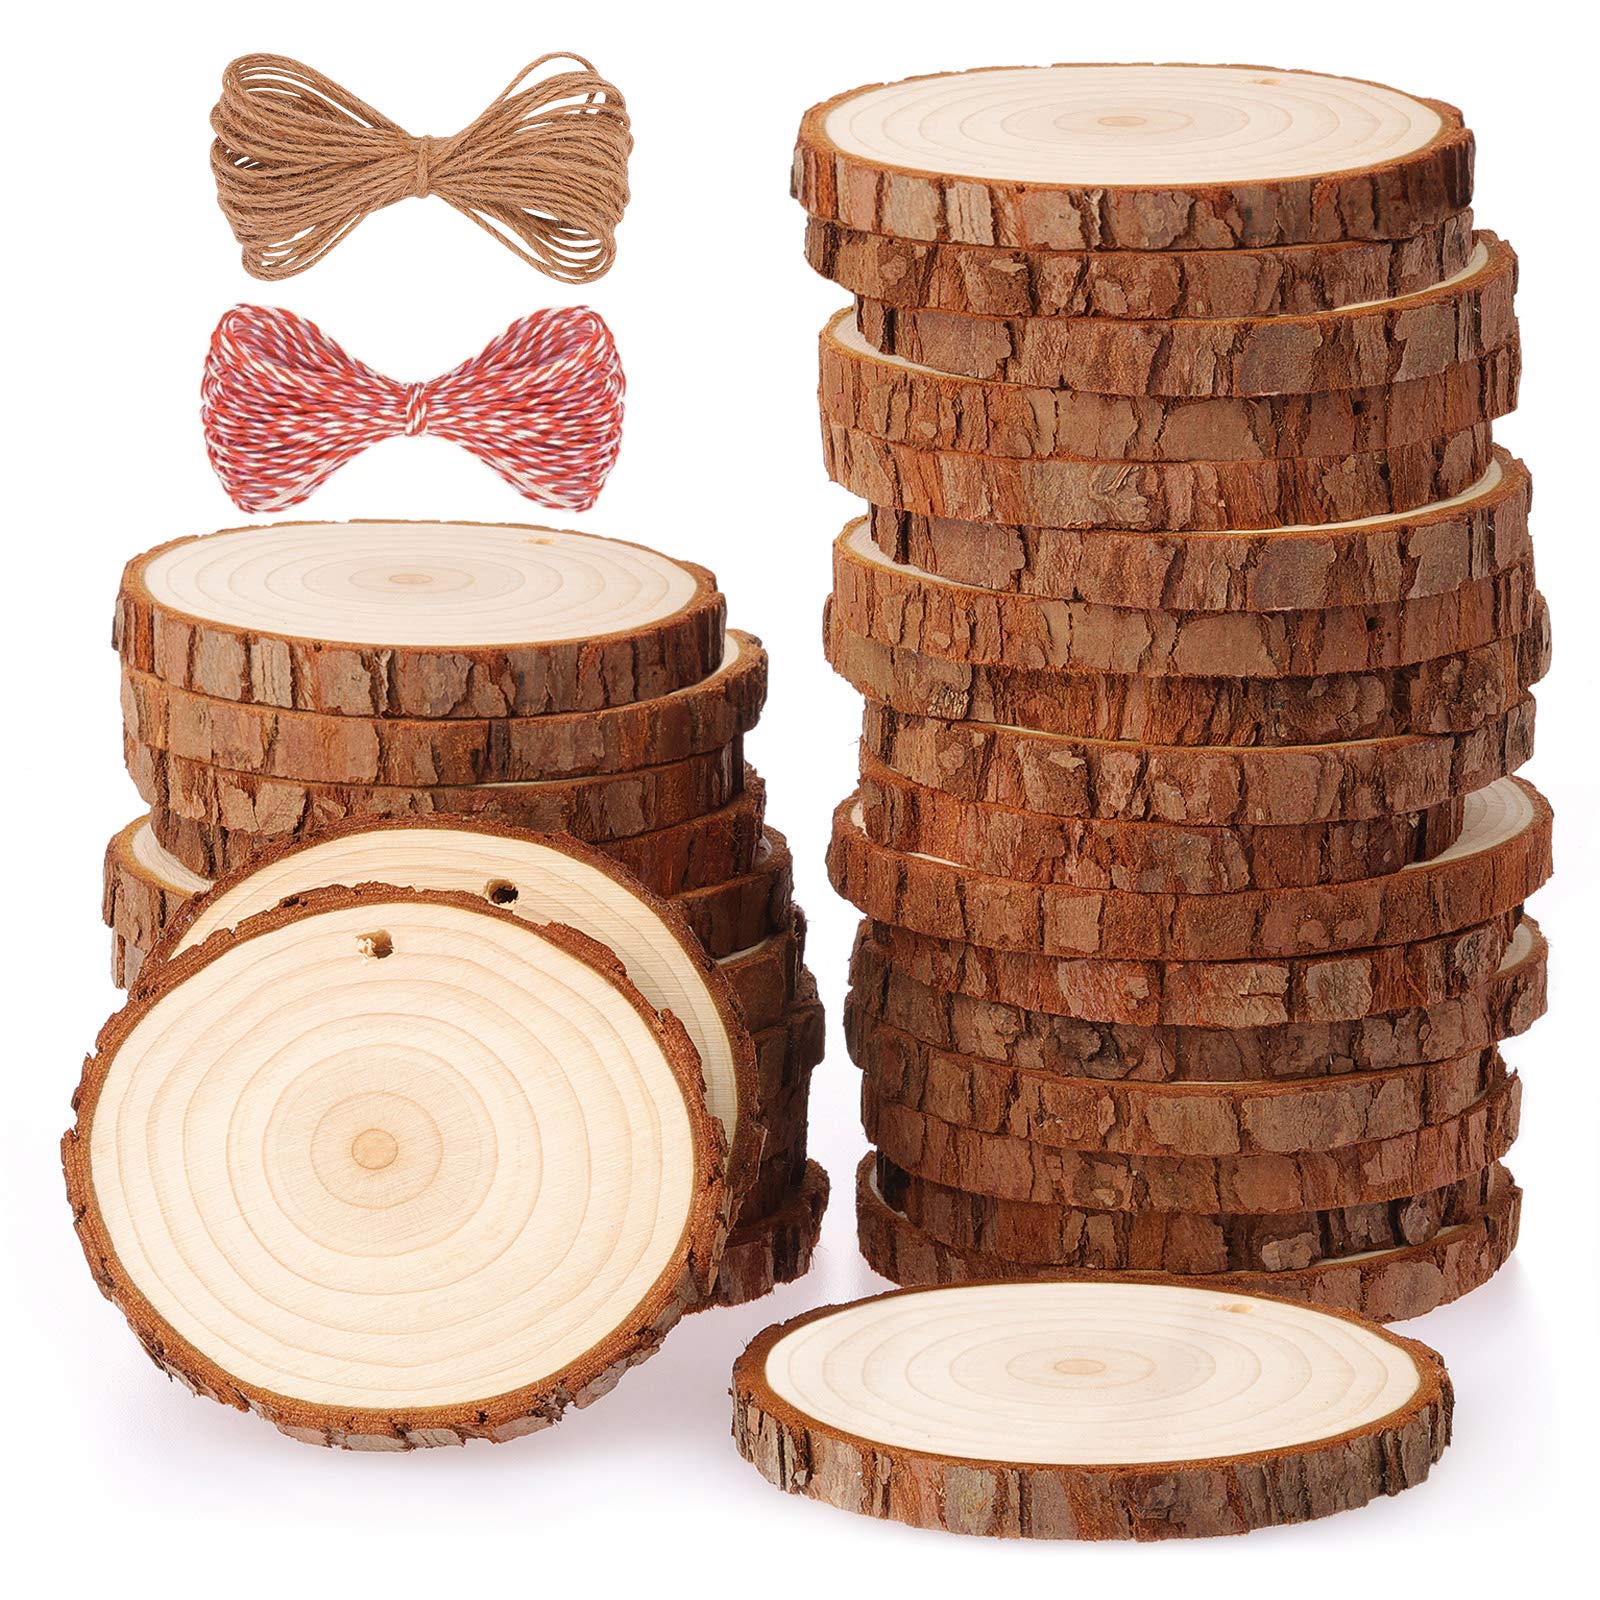 Natural Wood Slices Craft Wood Kit Wooden Circles DIY Arts Crafts